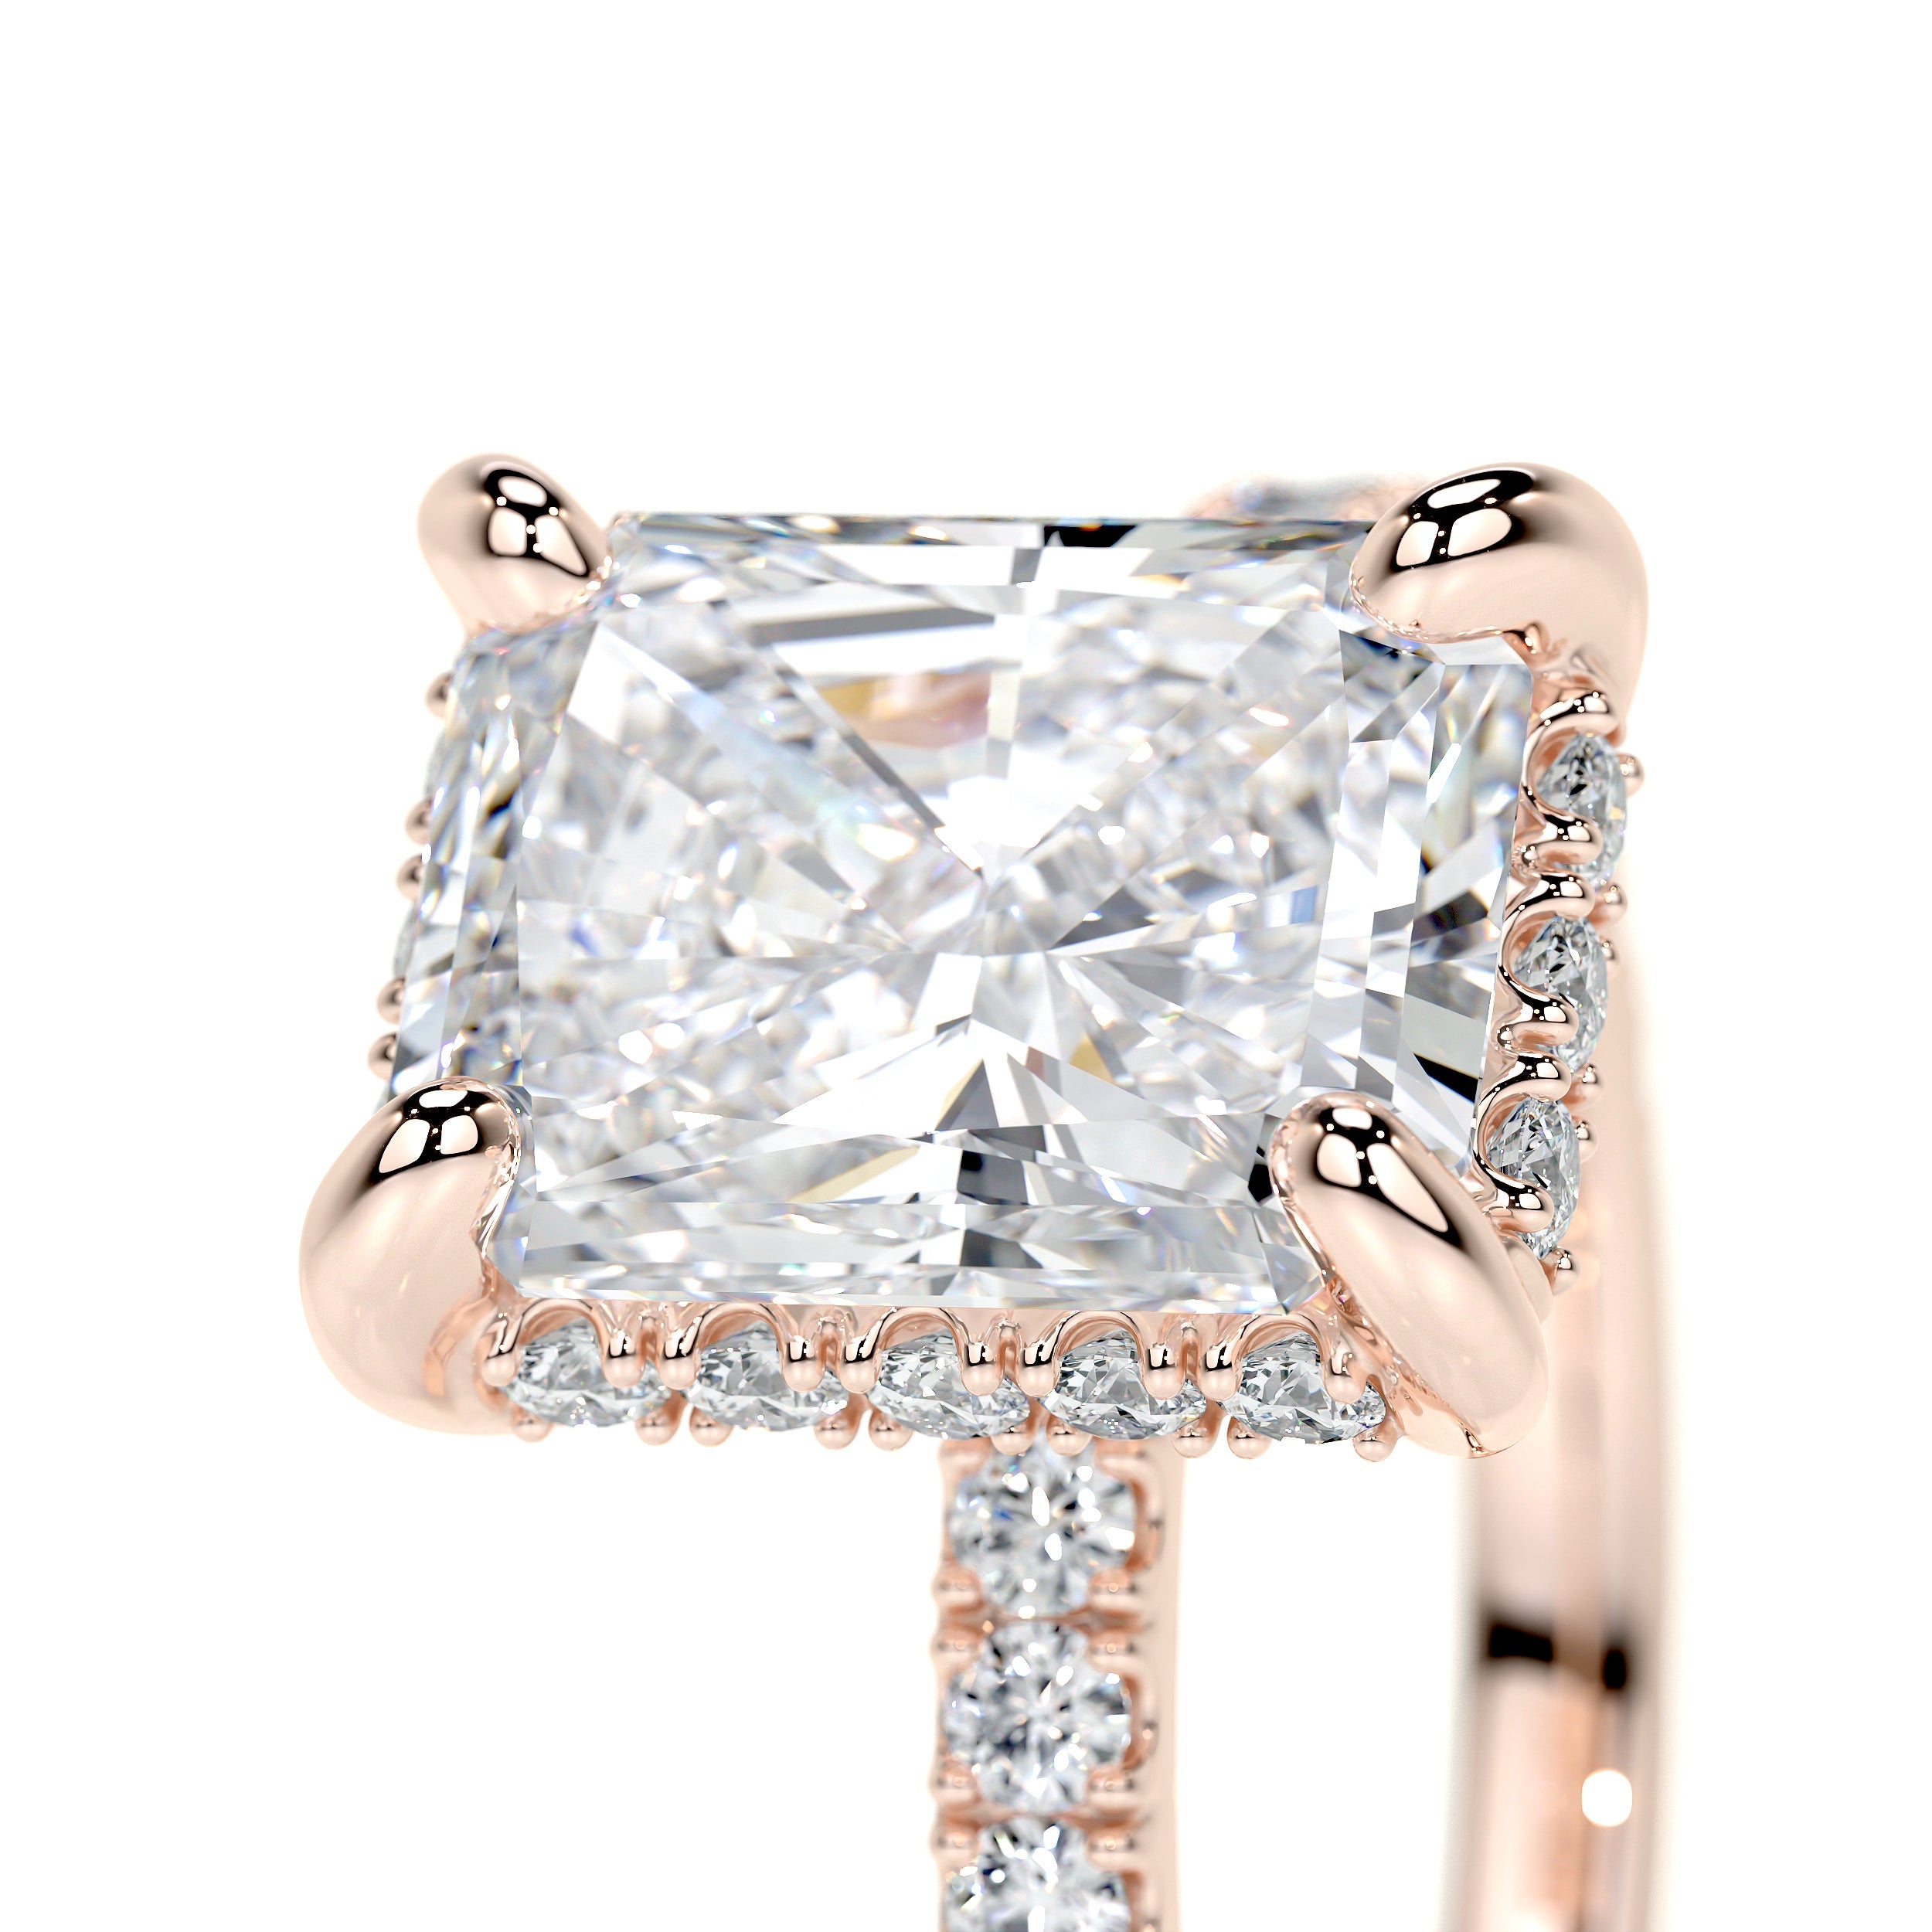 Luna Lab Grown Diamond Ring   (2.5 Carat) -14K Rose Gold